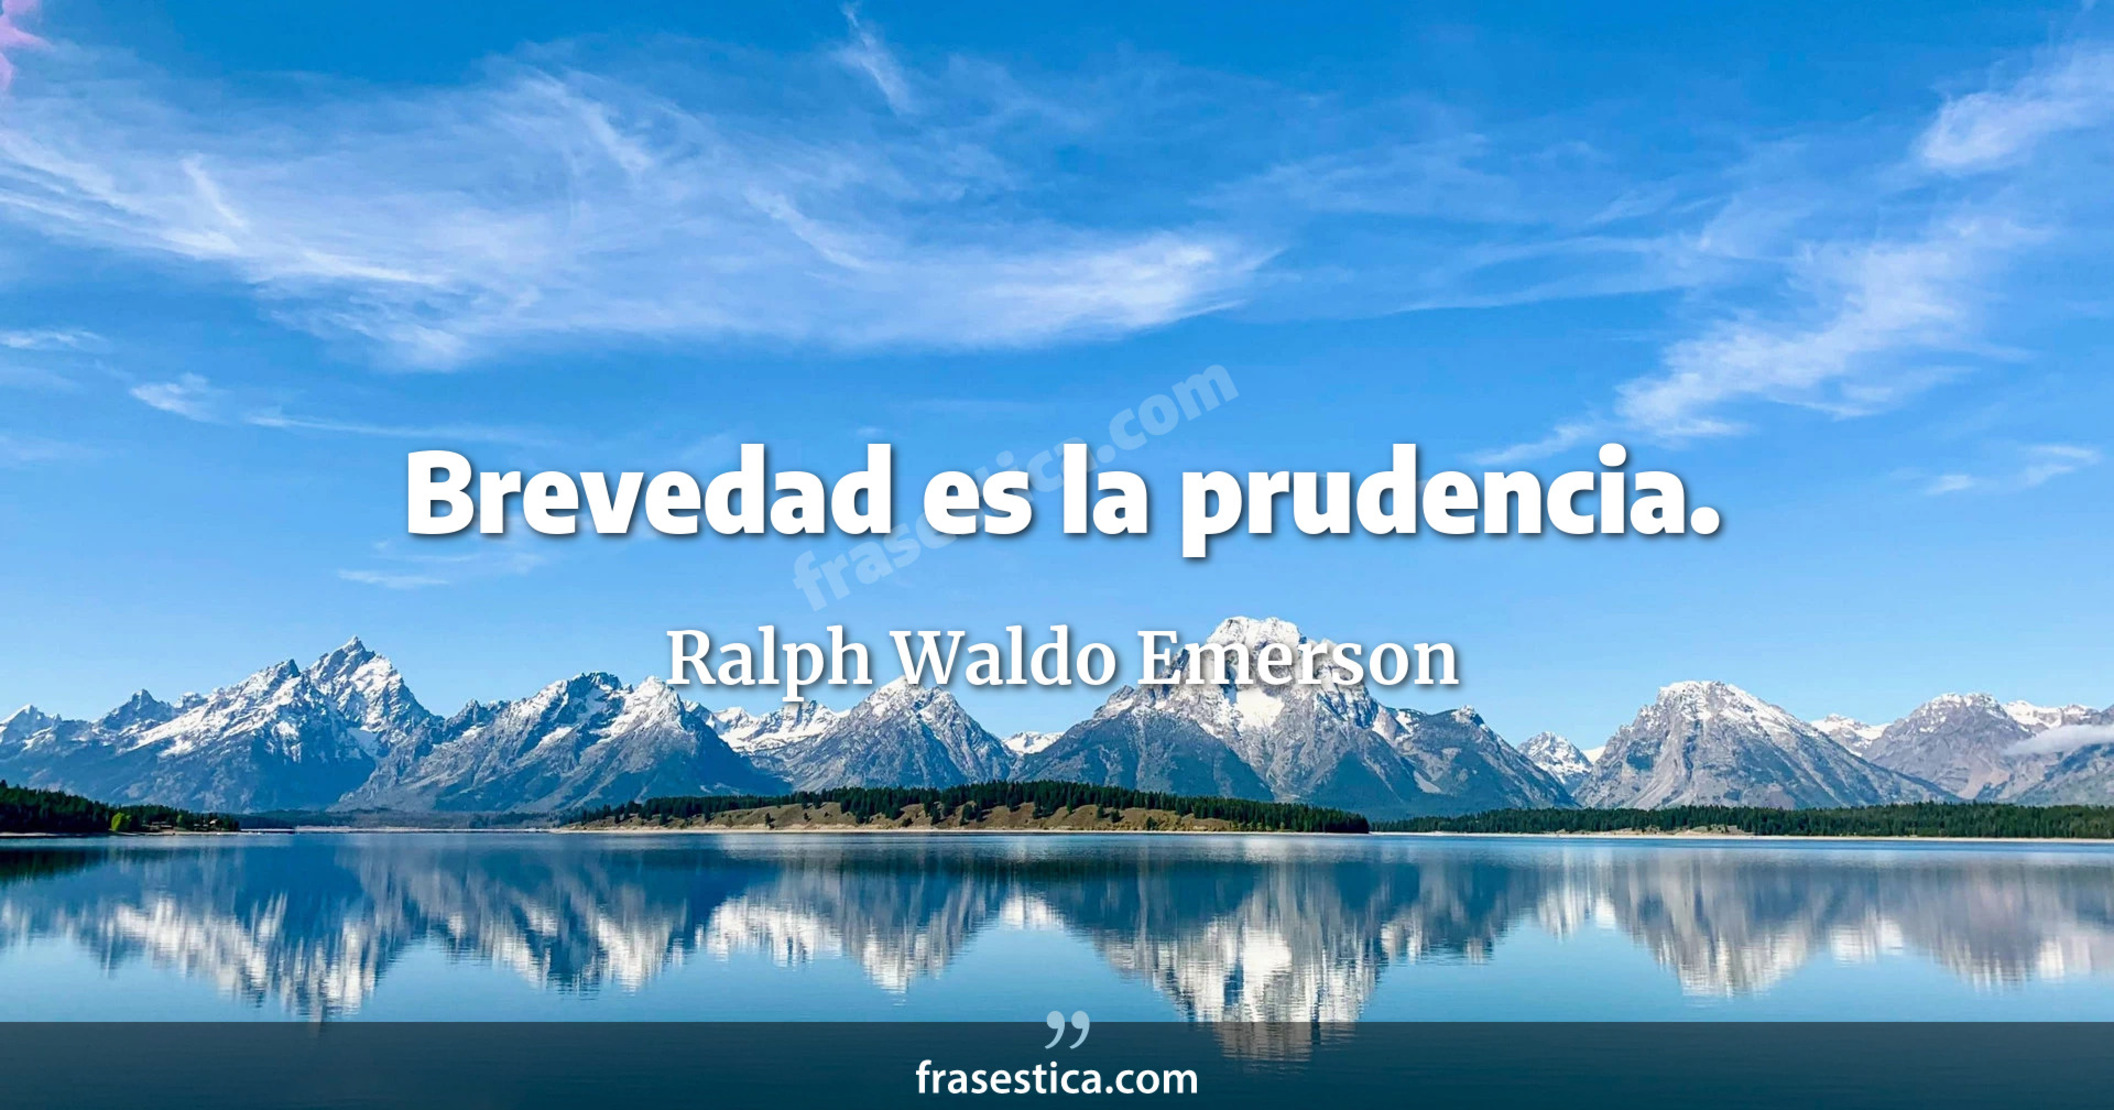 Brevedad es la prudencia. - Ralph Waldo Emerson